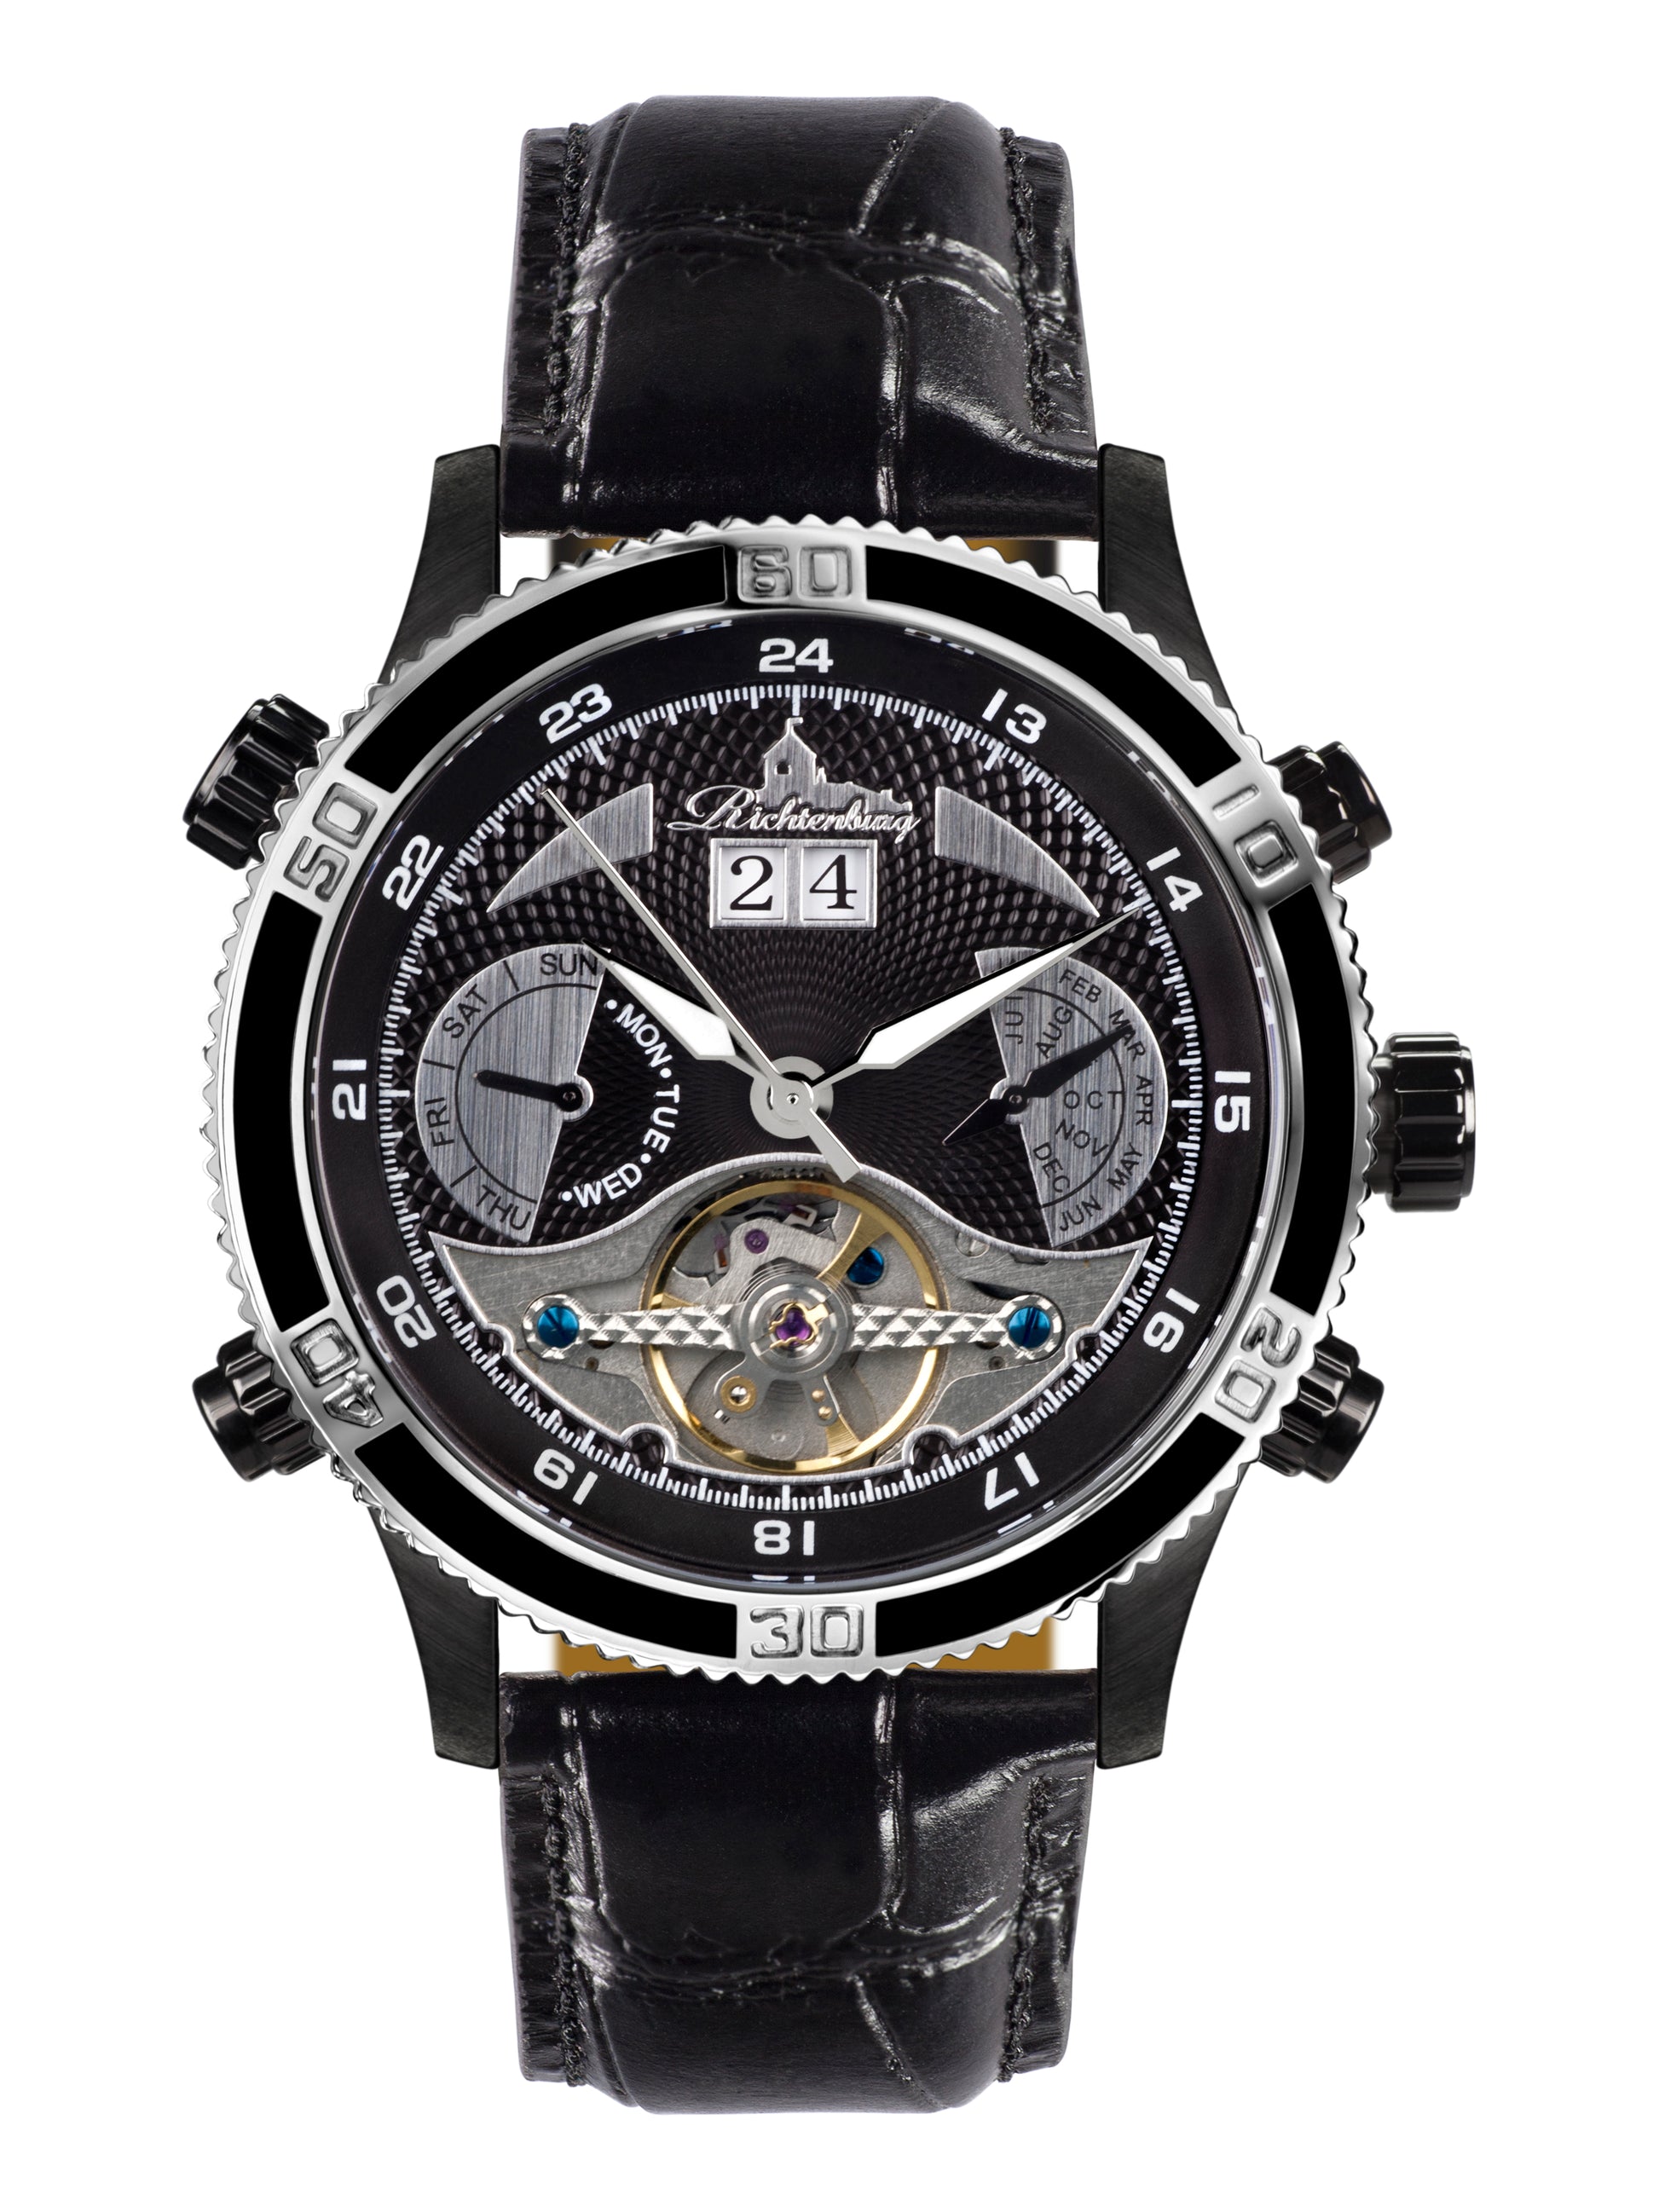 Automatic watches — Kaiman — Richtenburg — steel black